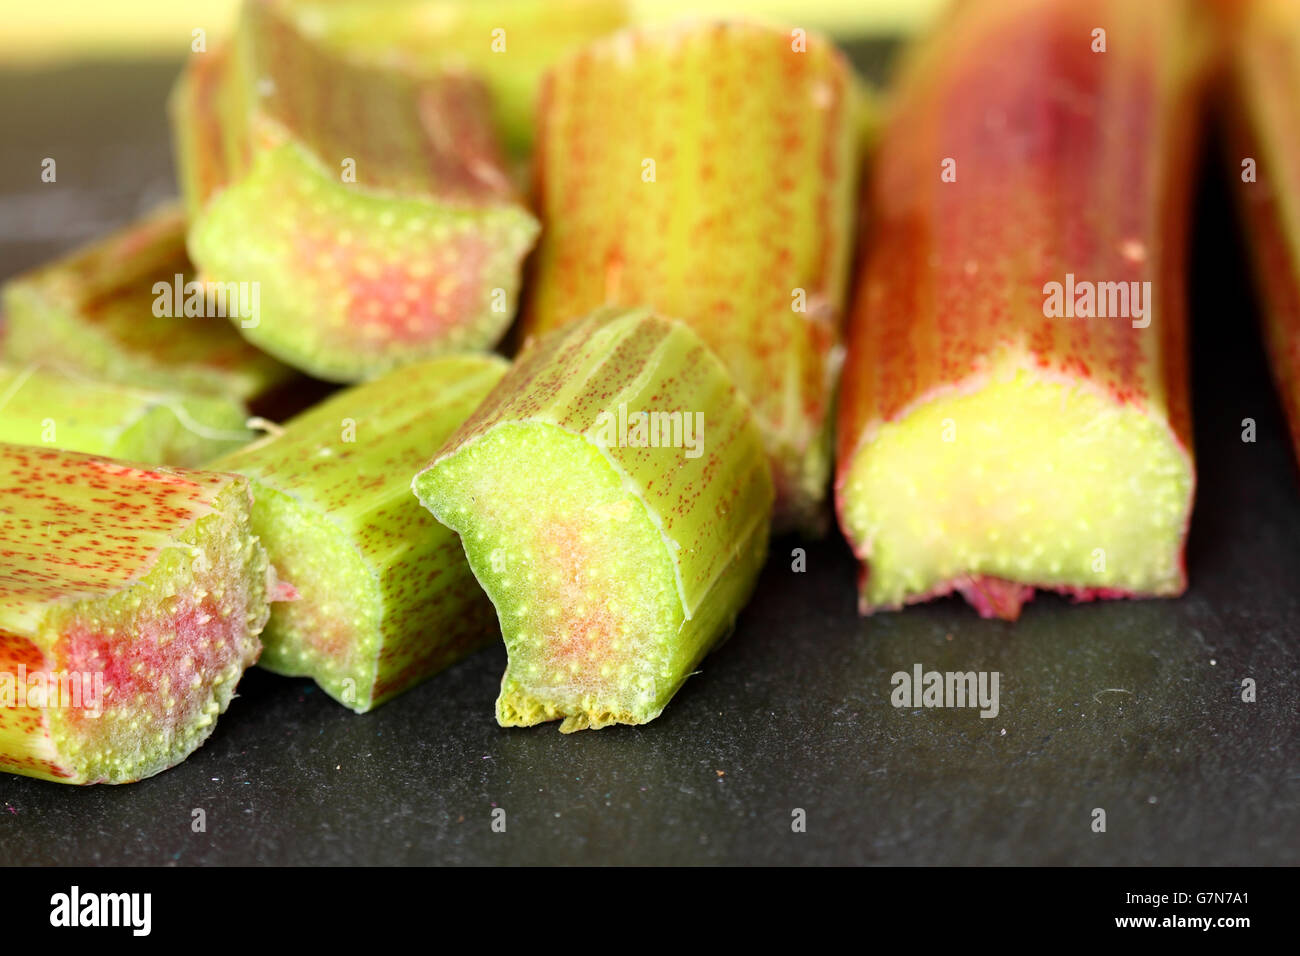 Rhubarb slate Stock Photo